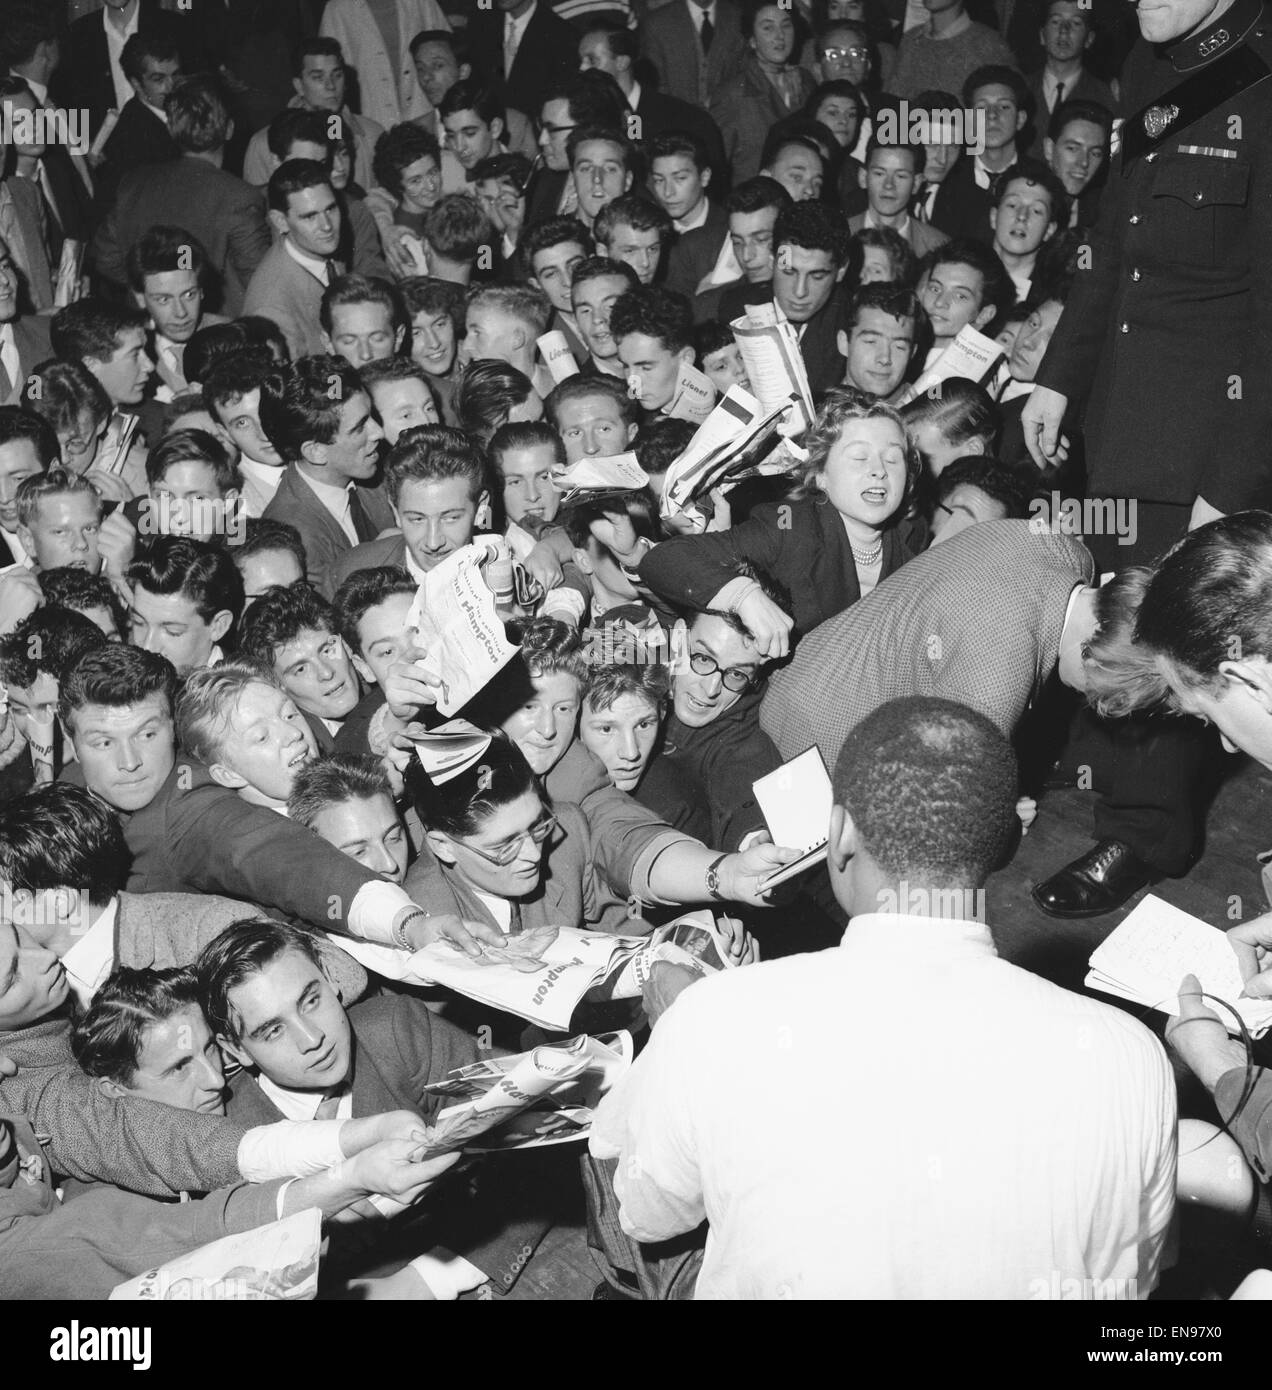 Ventole rush in avanti per ottenere l'autografo della leggenda del jazz Lionel Hampton all'Imperatrice Hall di Londra. Il 21 ottobre 1956 Foto Stock